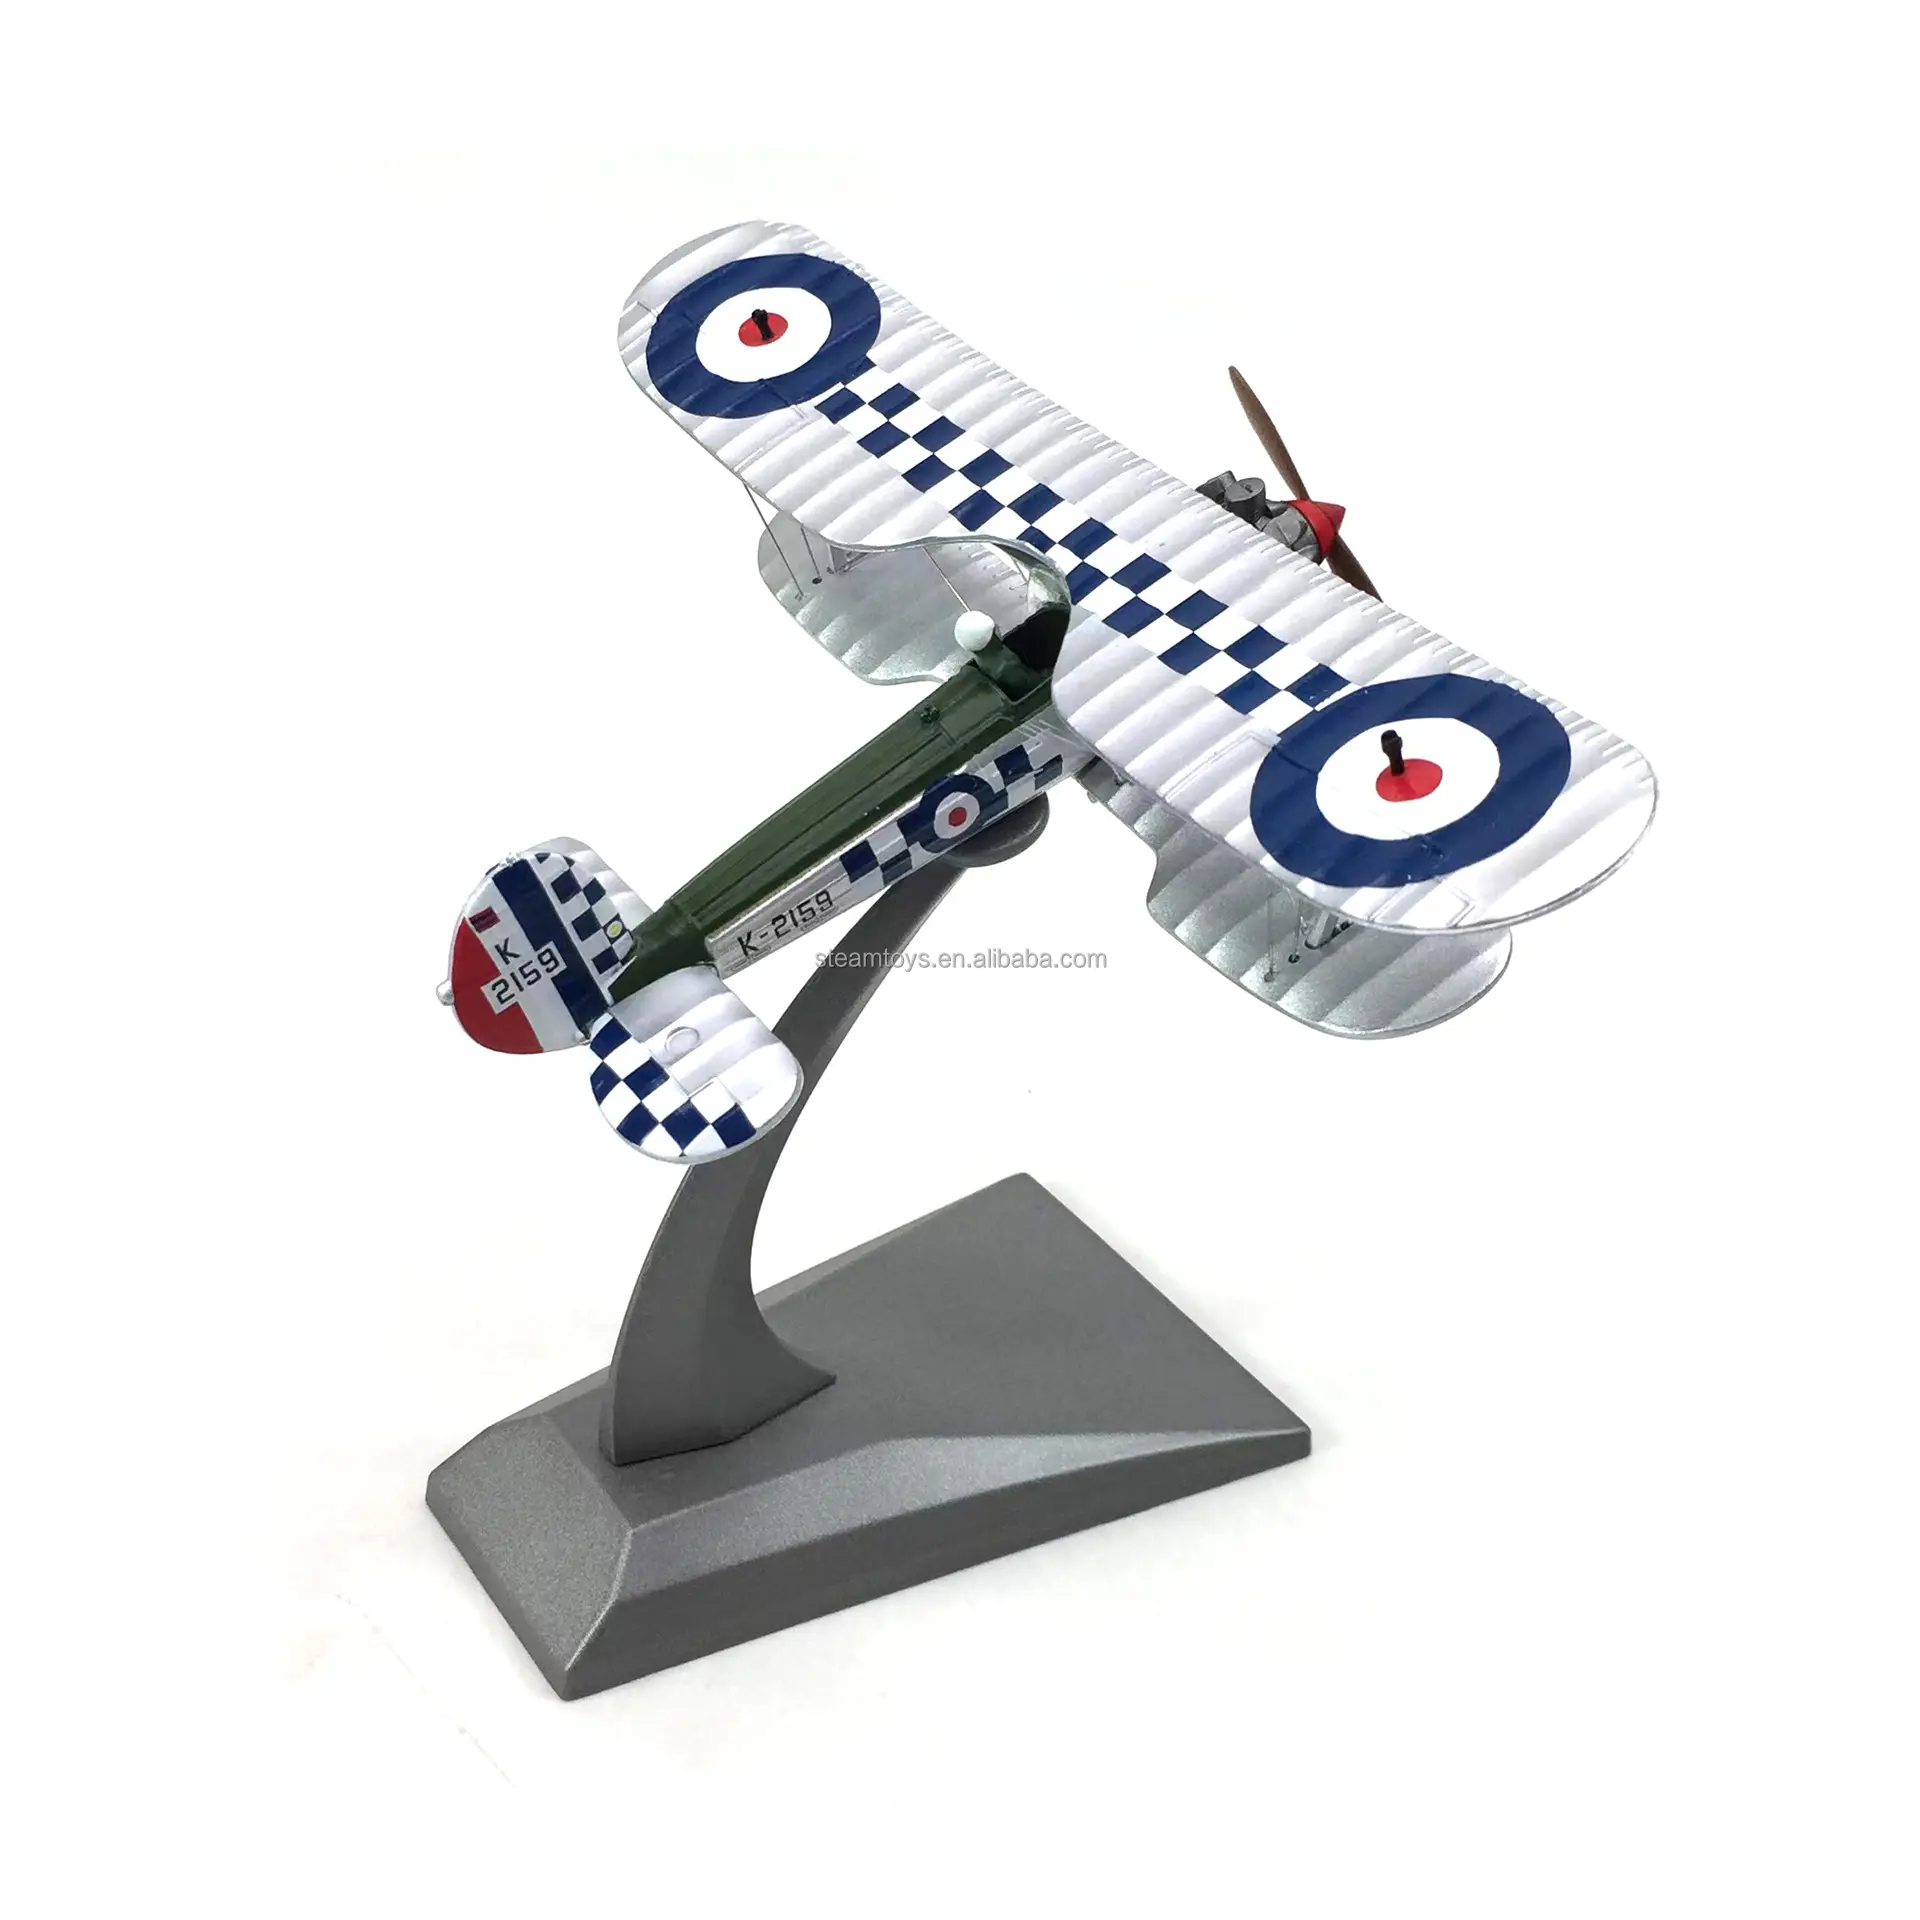 Bristol Bulldog patung kecil logam klasik Model pesawat Inggris Royal Air Force untuk Kolektor Model pesawat antik